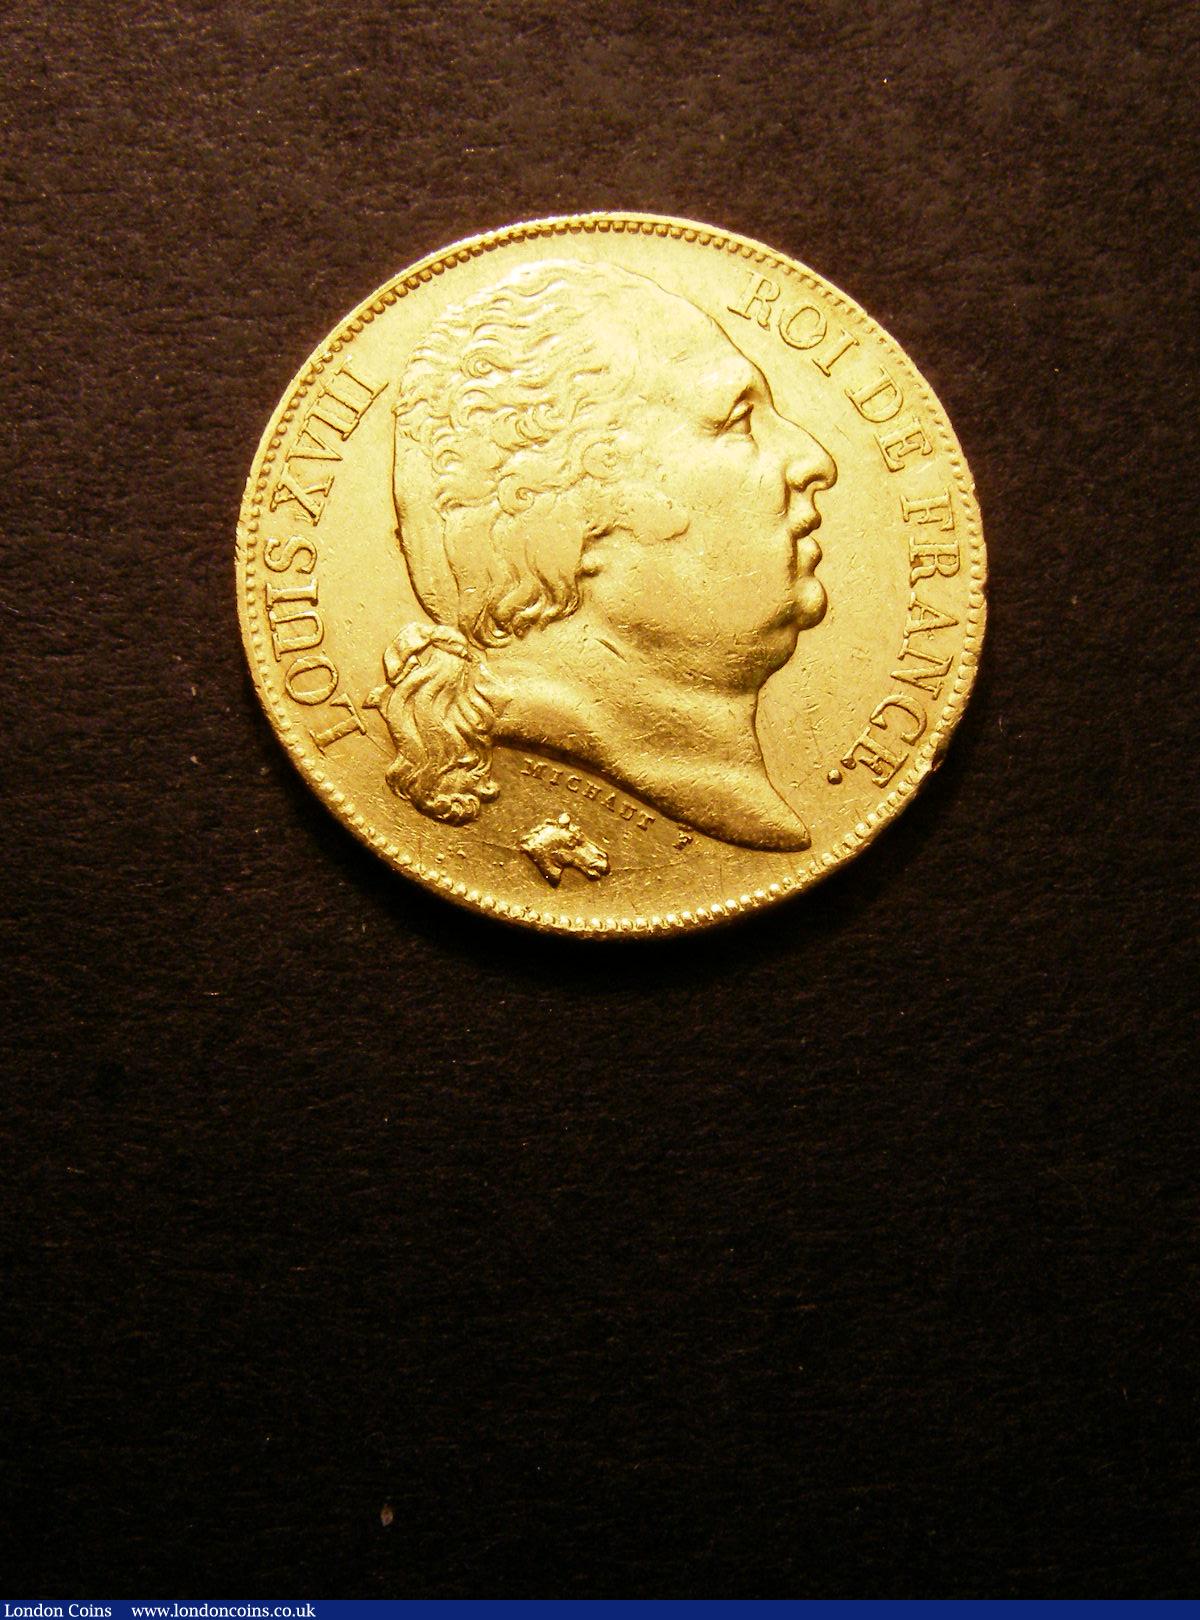 France 20 Francs Gold 1817 A Le Franc 519/5 GF/NVF : World Coins : Auction 133 : Lot 1306